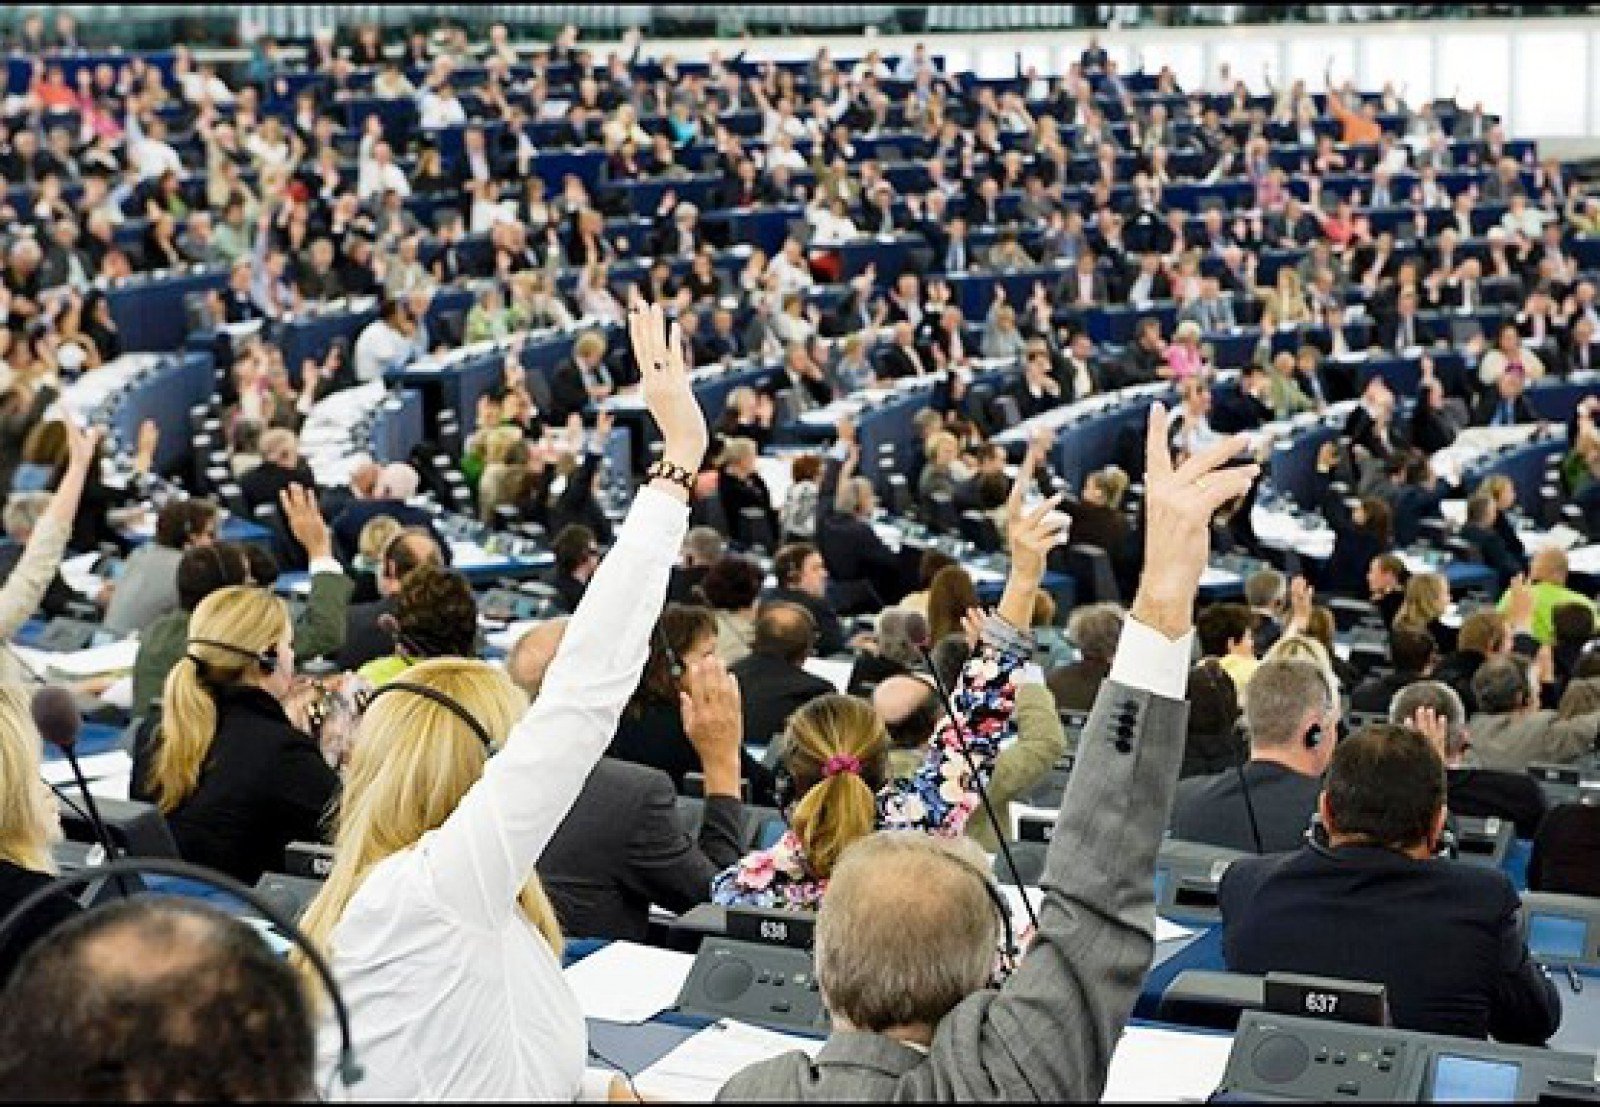  Parlamentul European a votat împotriva dublului standard de calitate la produse pe piața unică europeană